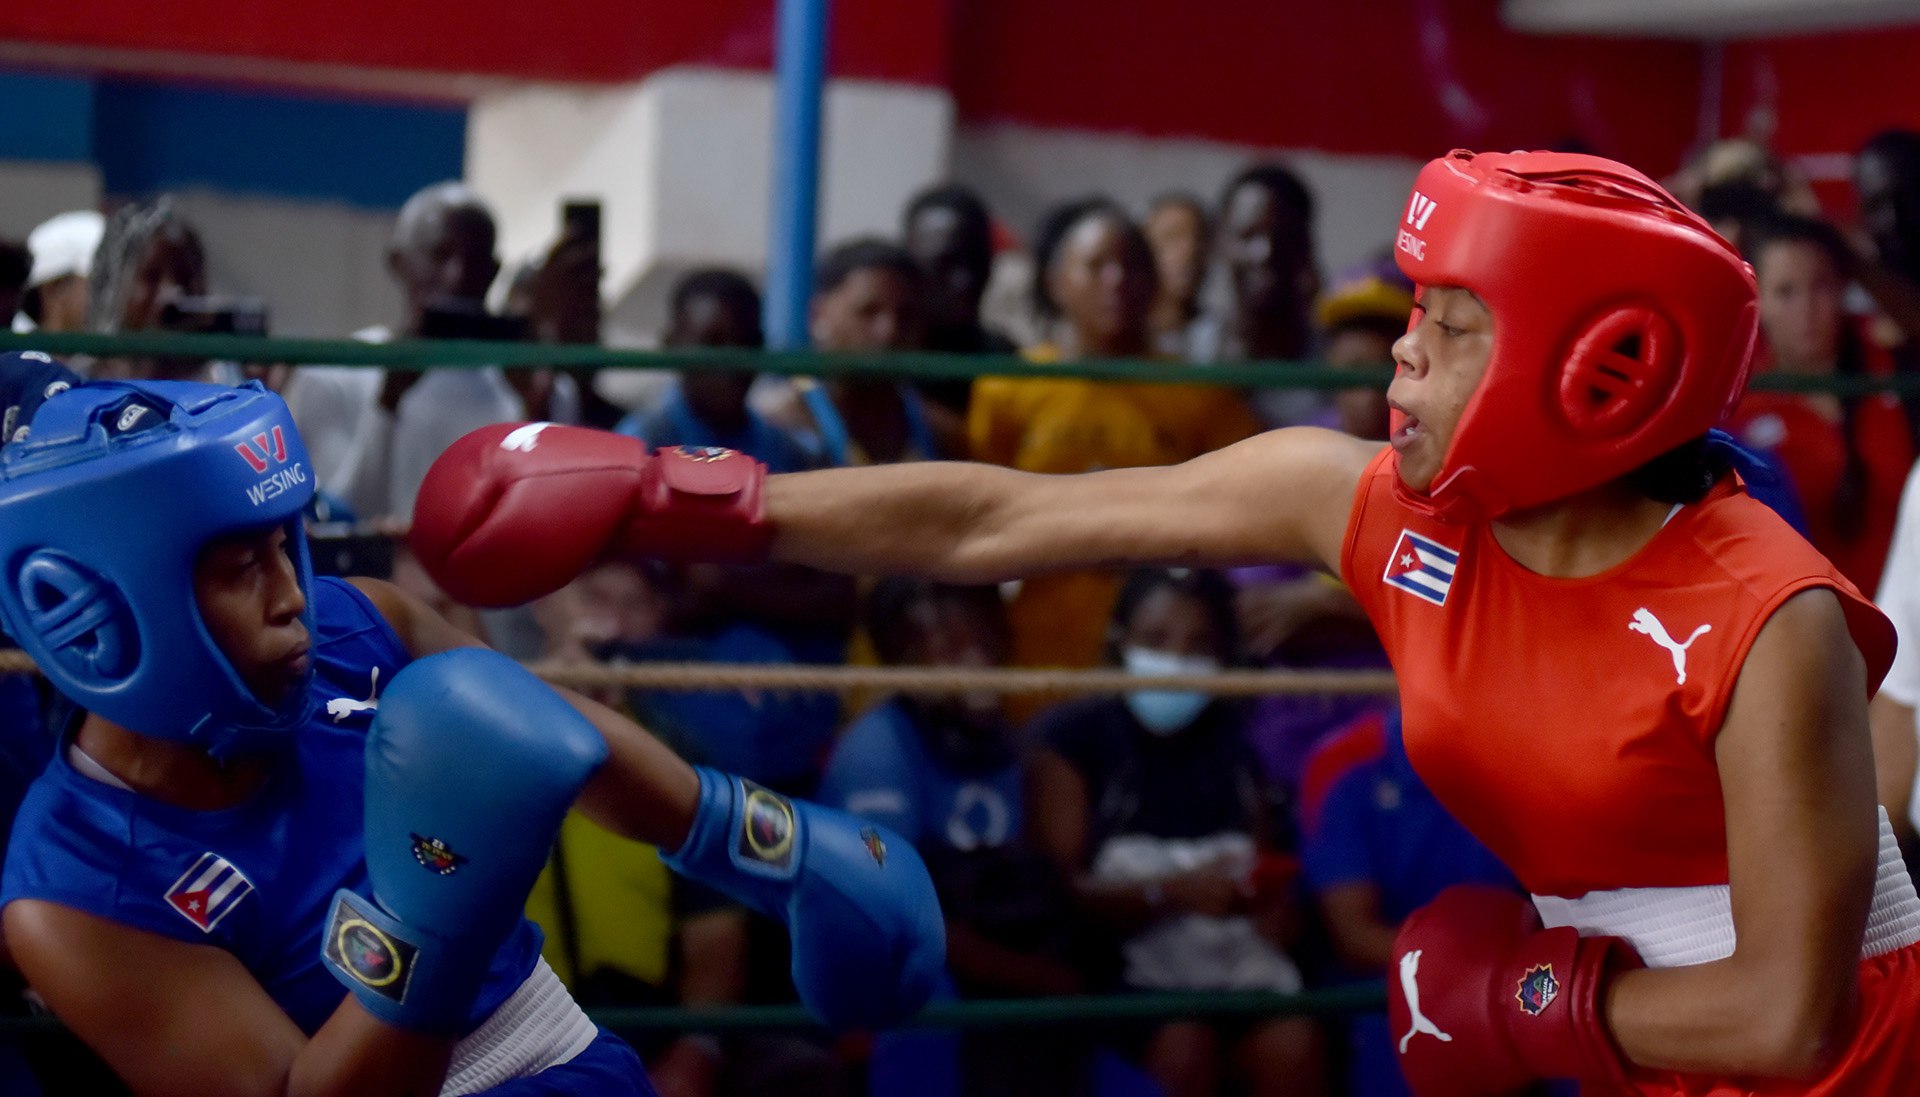 La revolución del boxeo femenino en Cuba